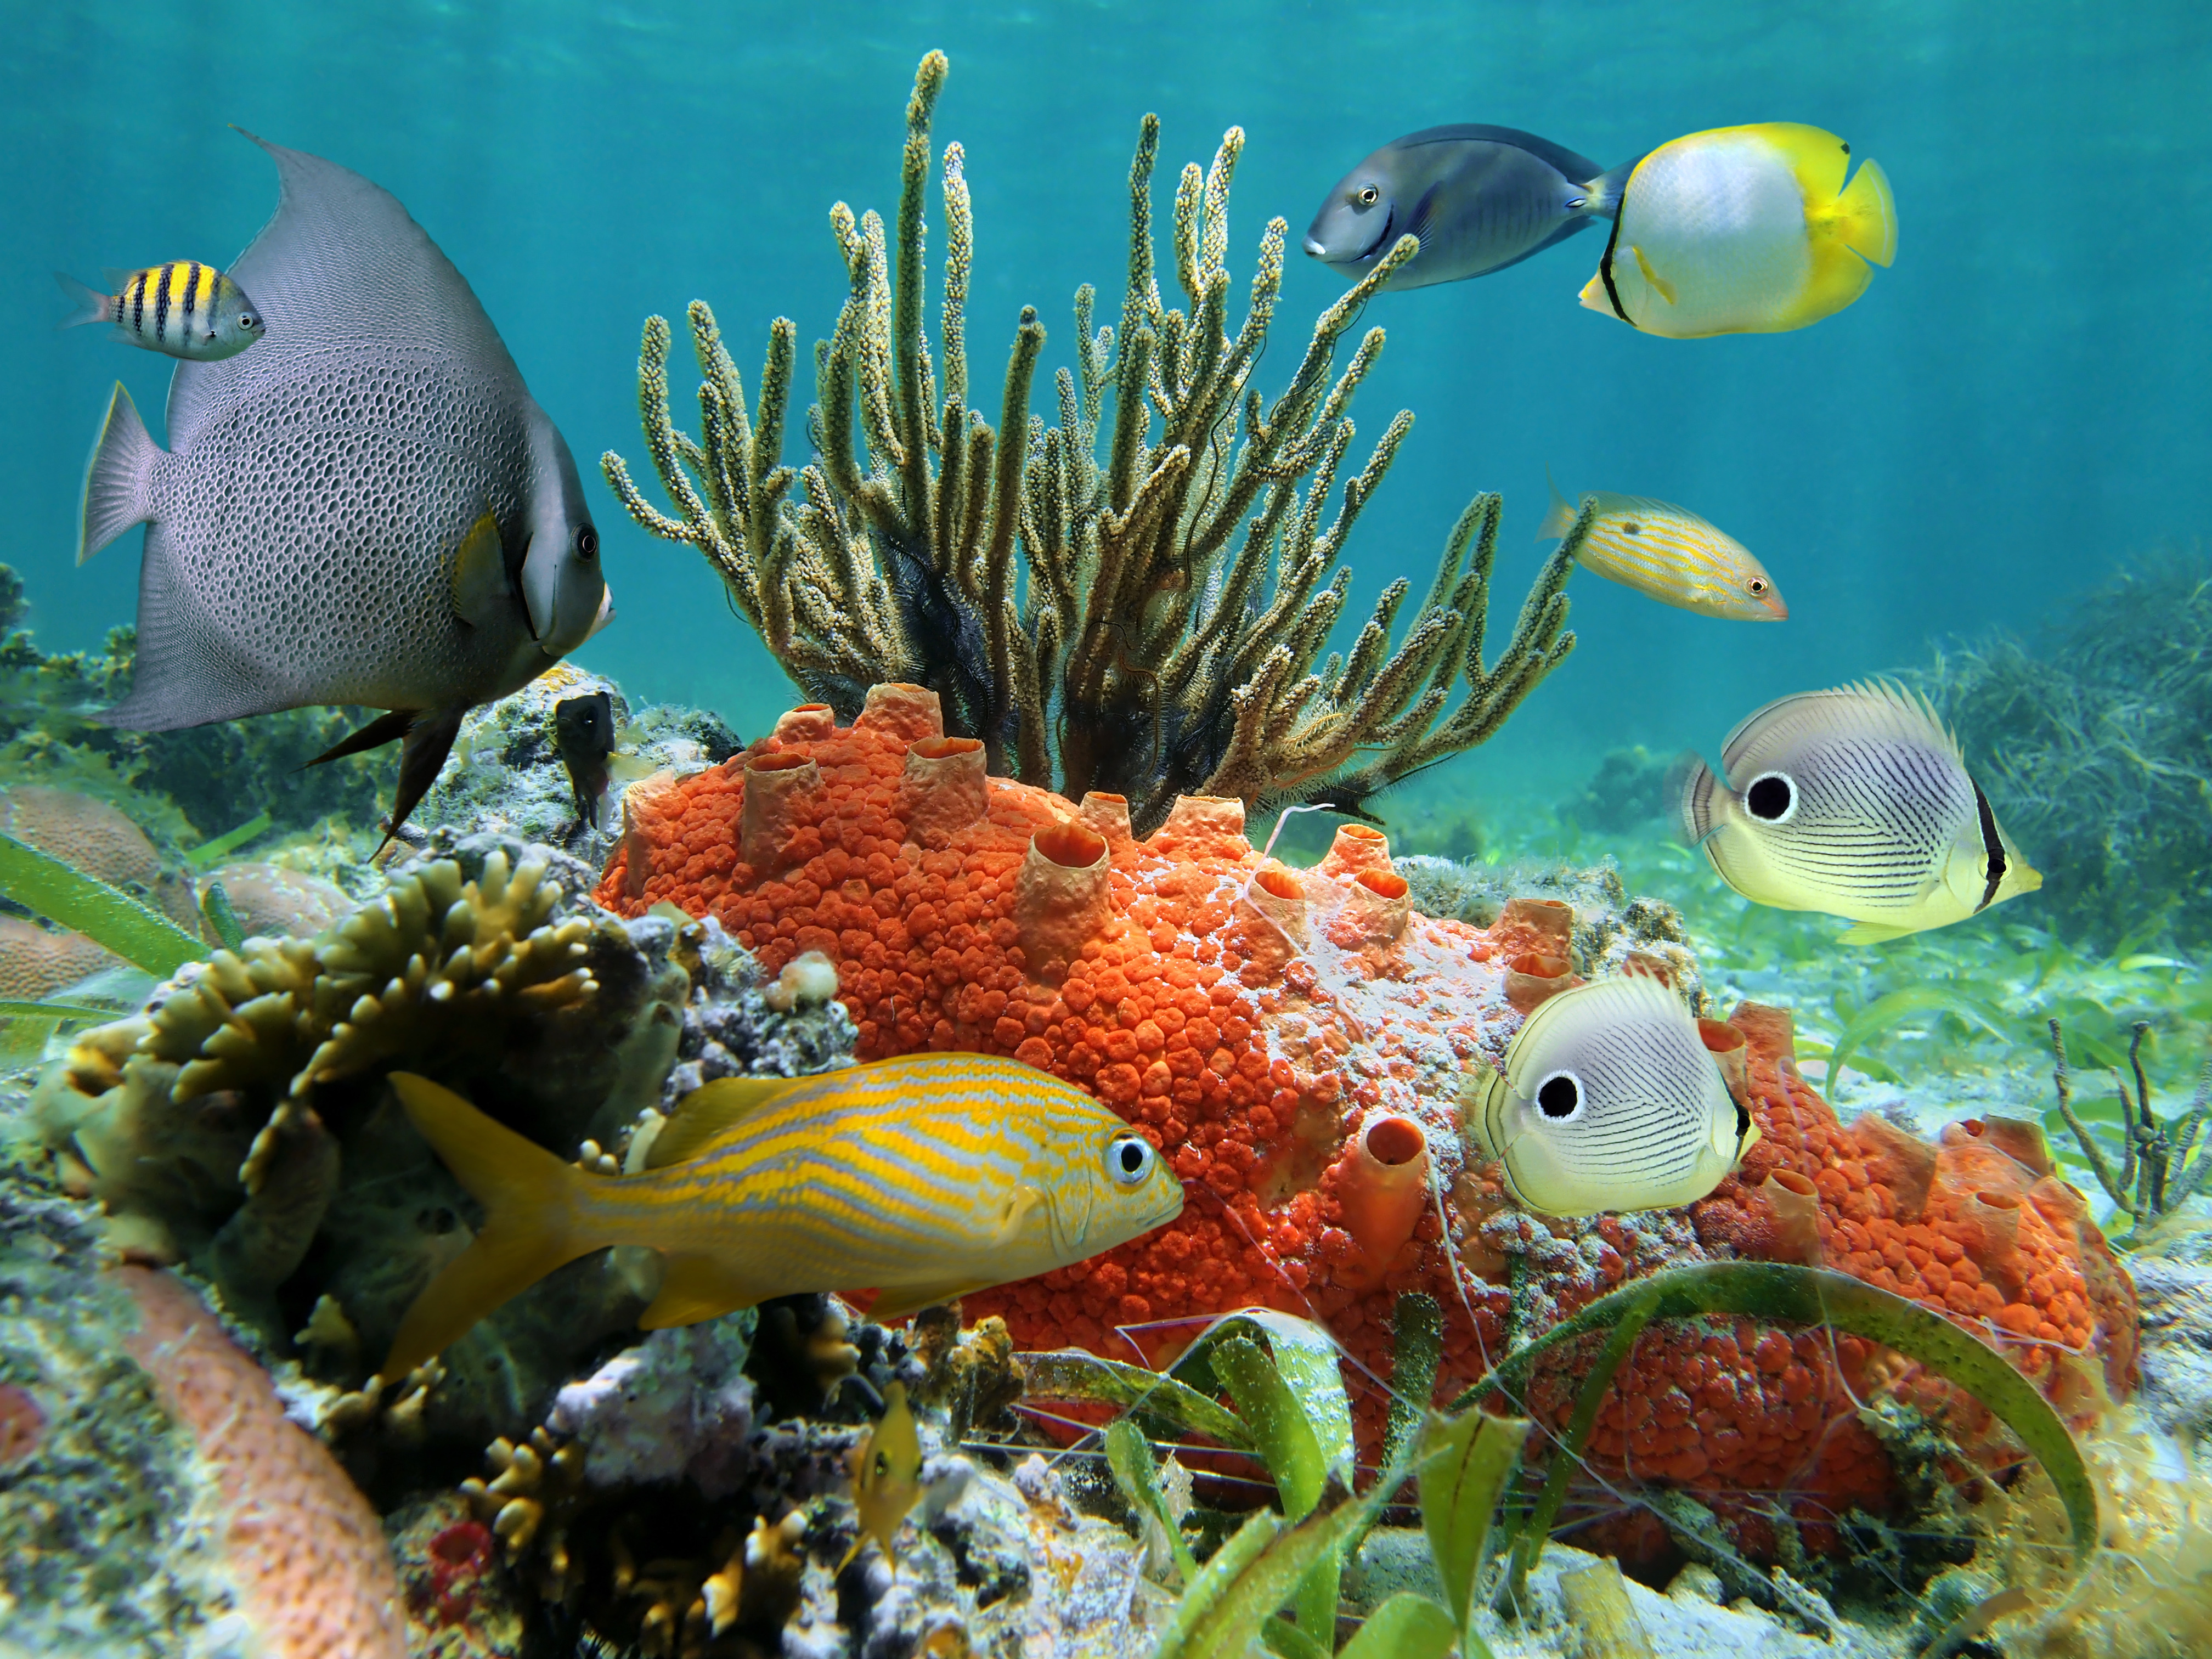 Скачать обои бесплатно Животные, Рыбы, Океан, Тропический, Подводный картинка на рабочий стол ПК